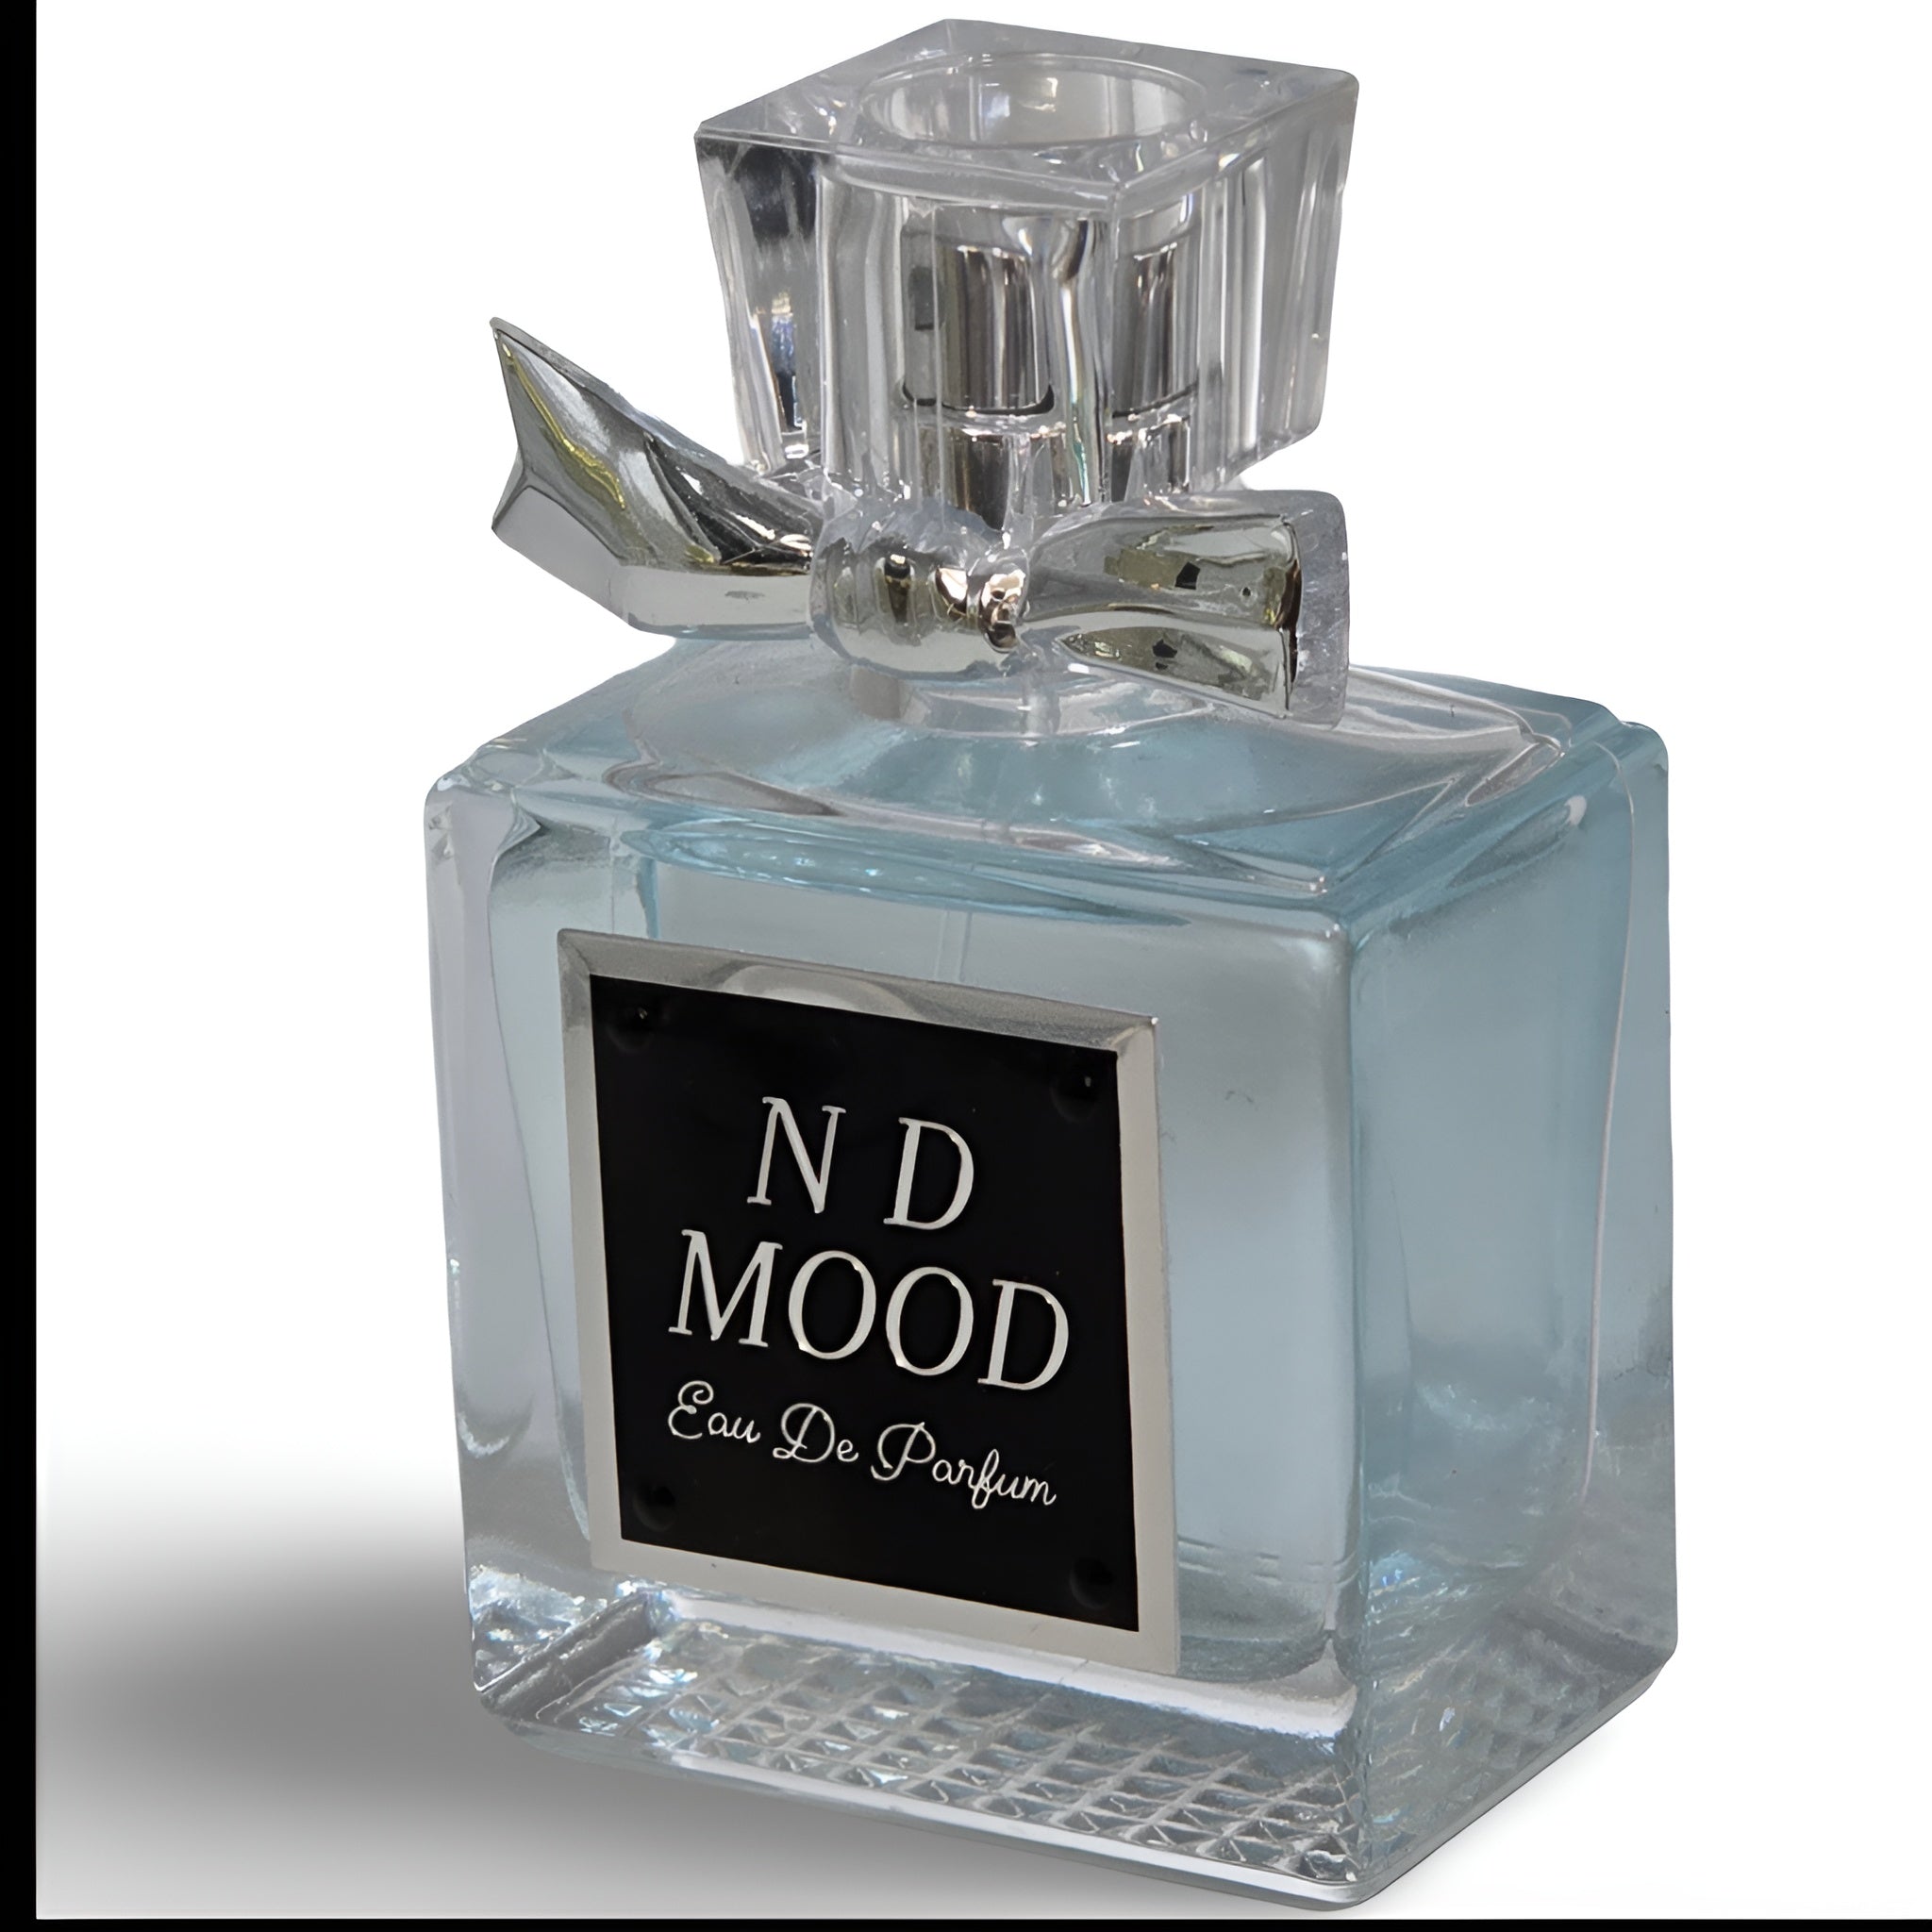 N D Mood Pheromone Perfume For Women| Regular Size (2OZ)